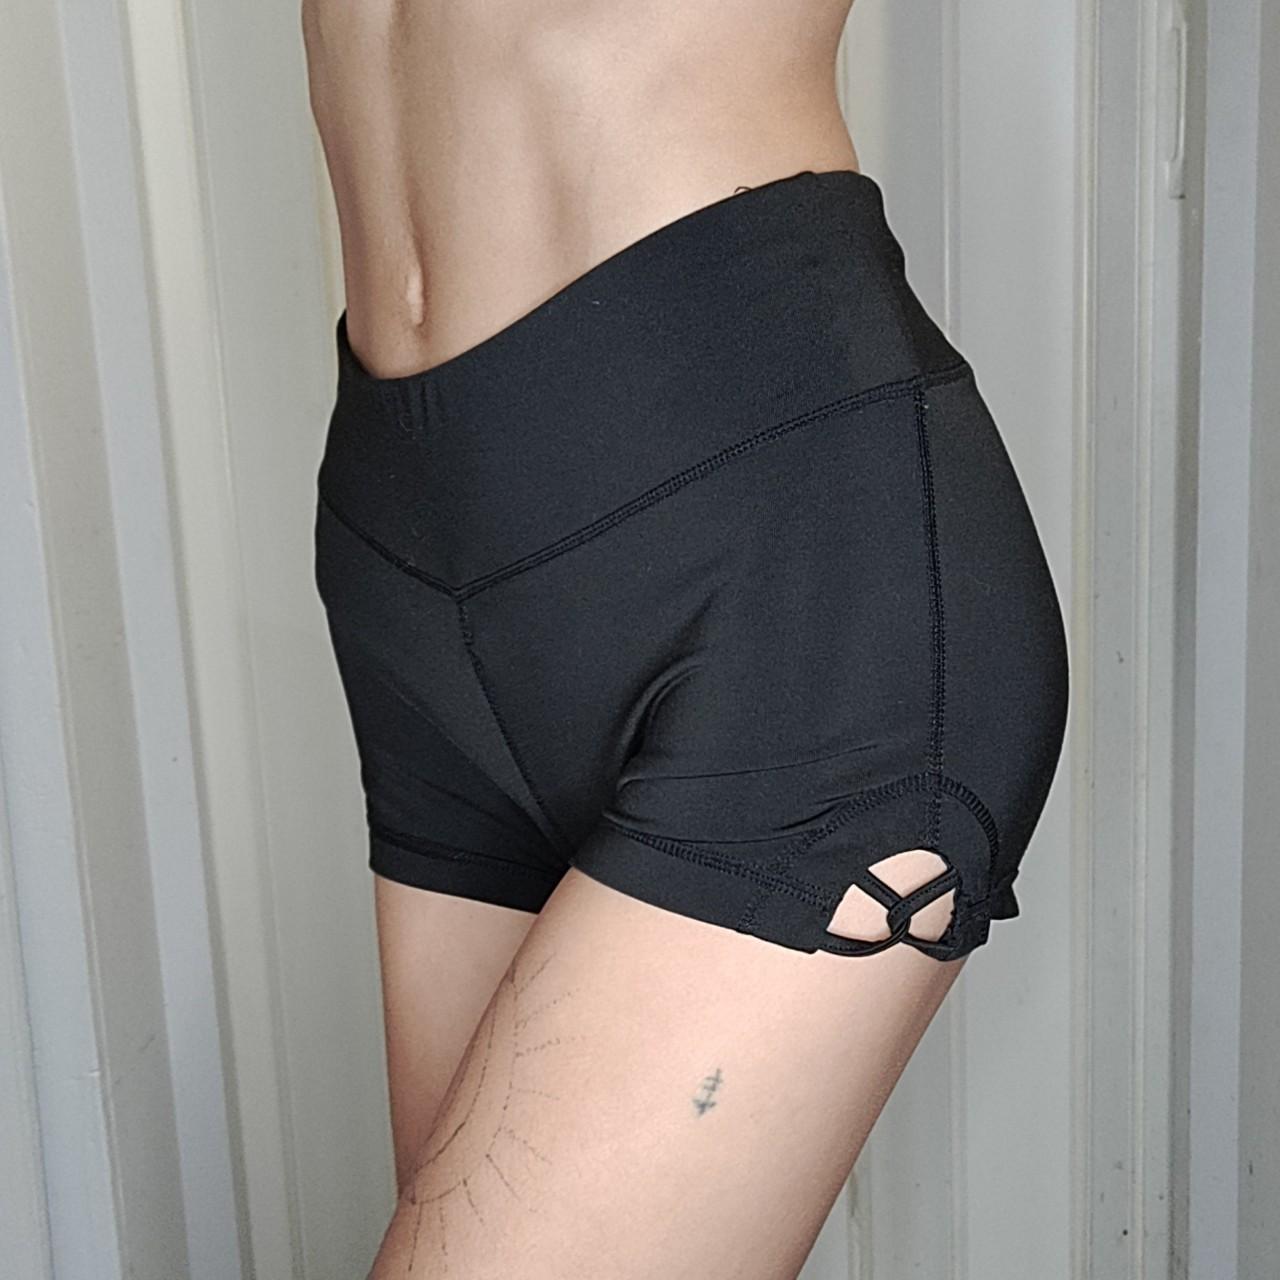 Solid black biker / workout / excersie cheeky shorts - Depop